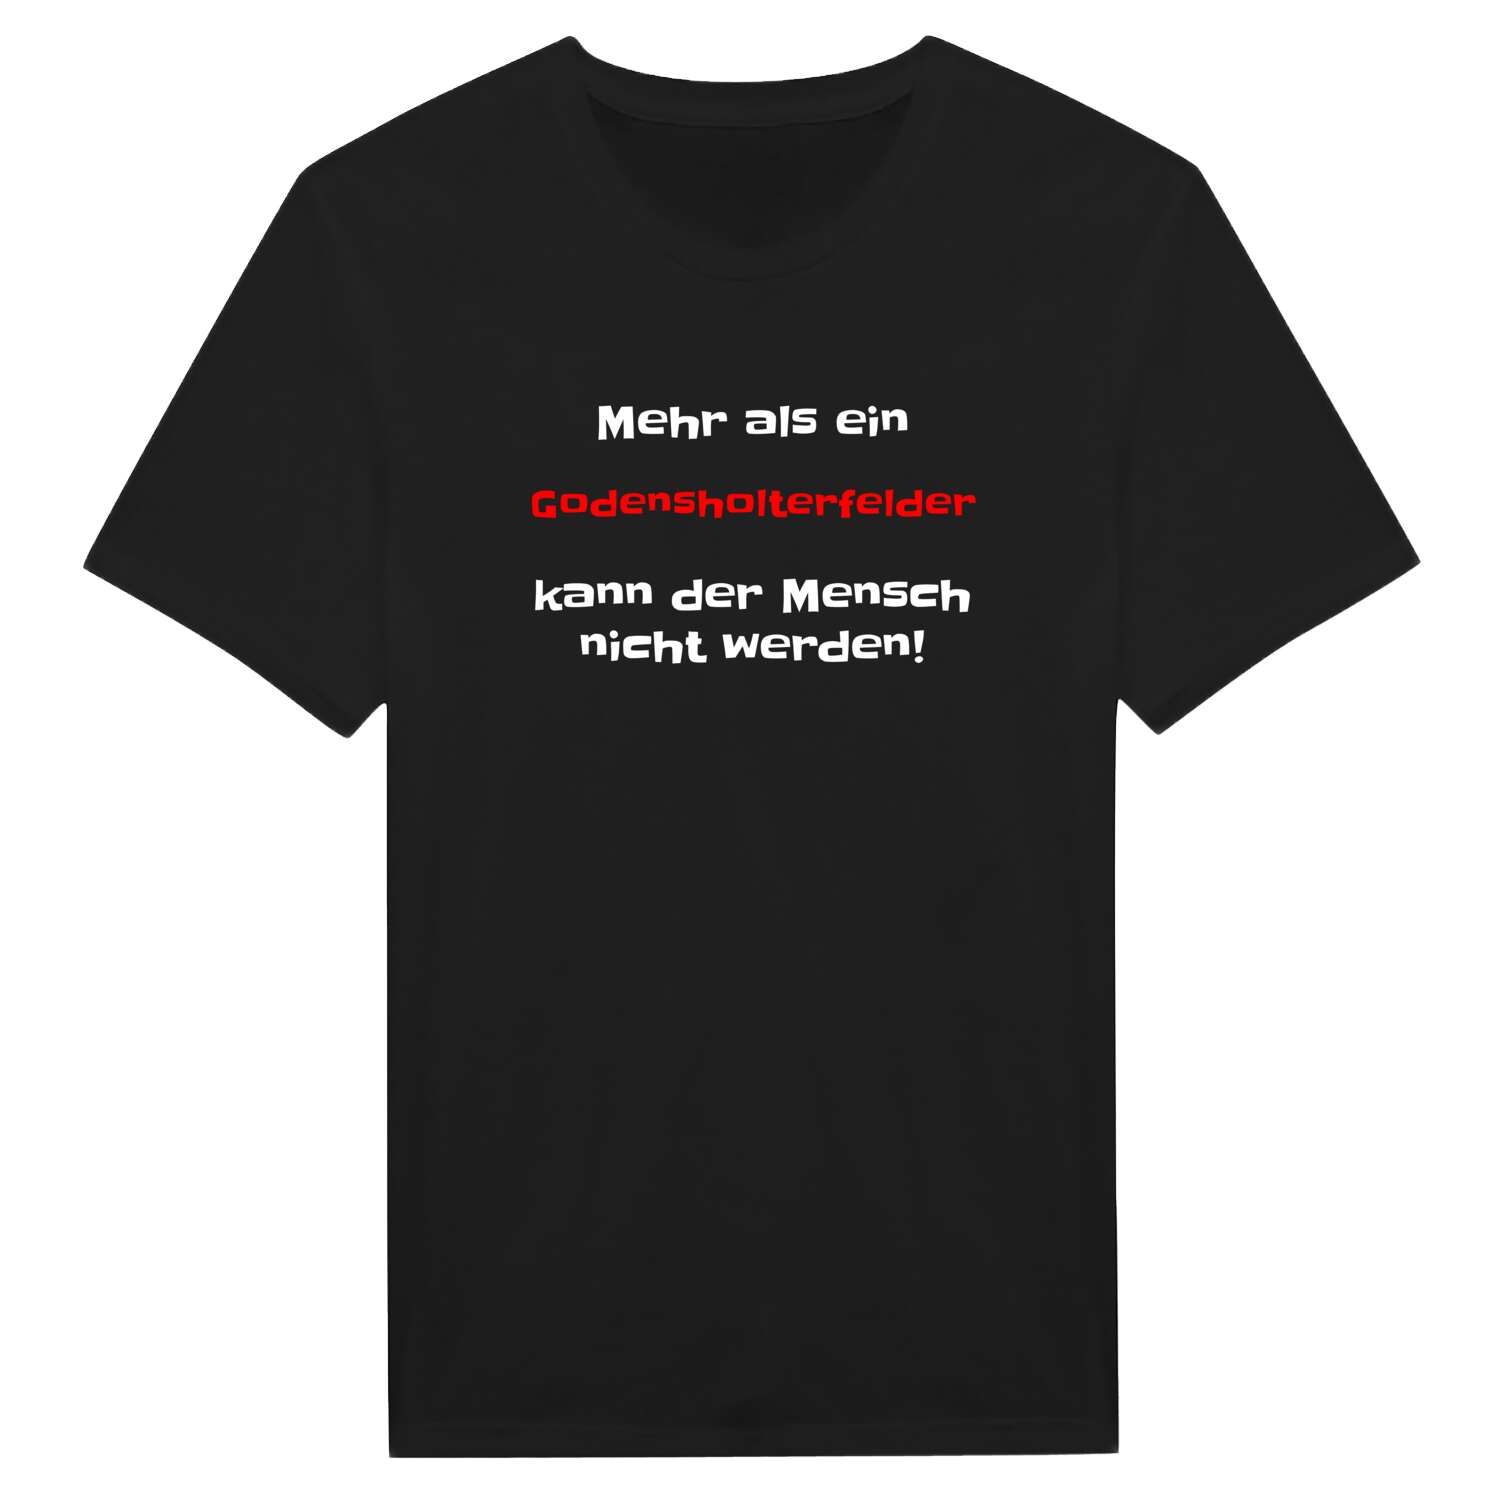 Godensholterfeld T-Shirt »Mehr als ein«